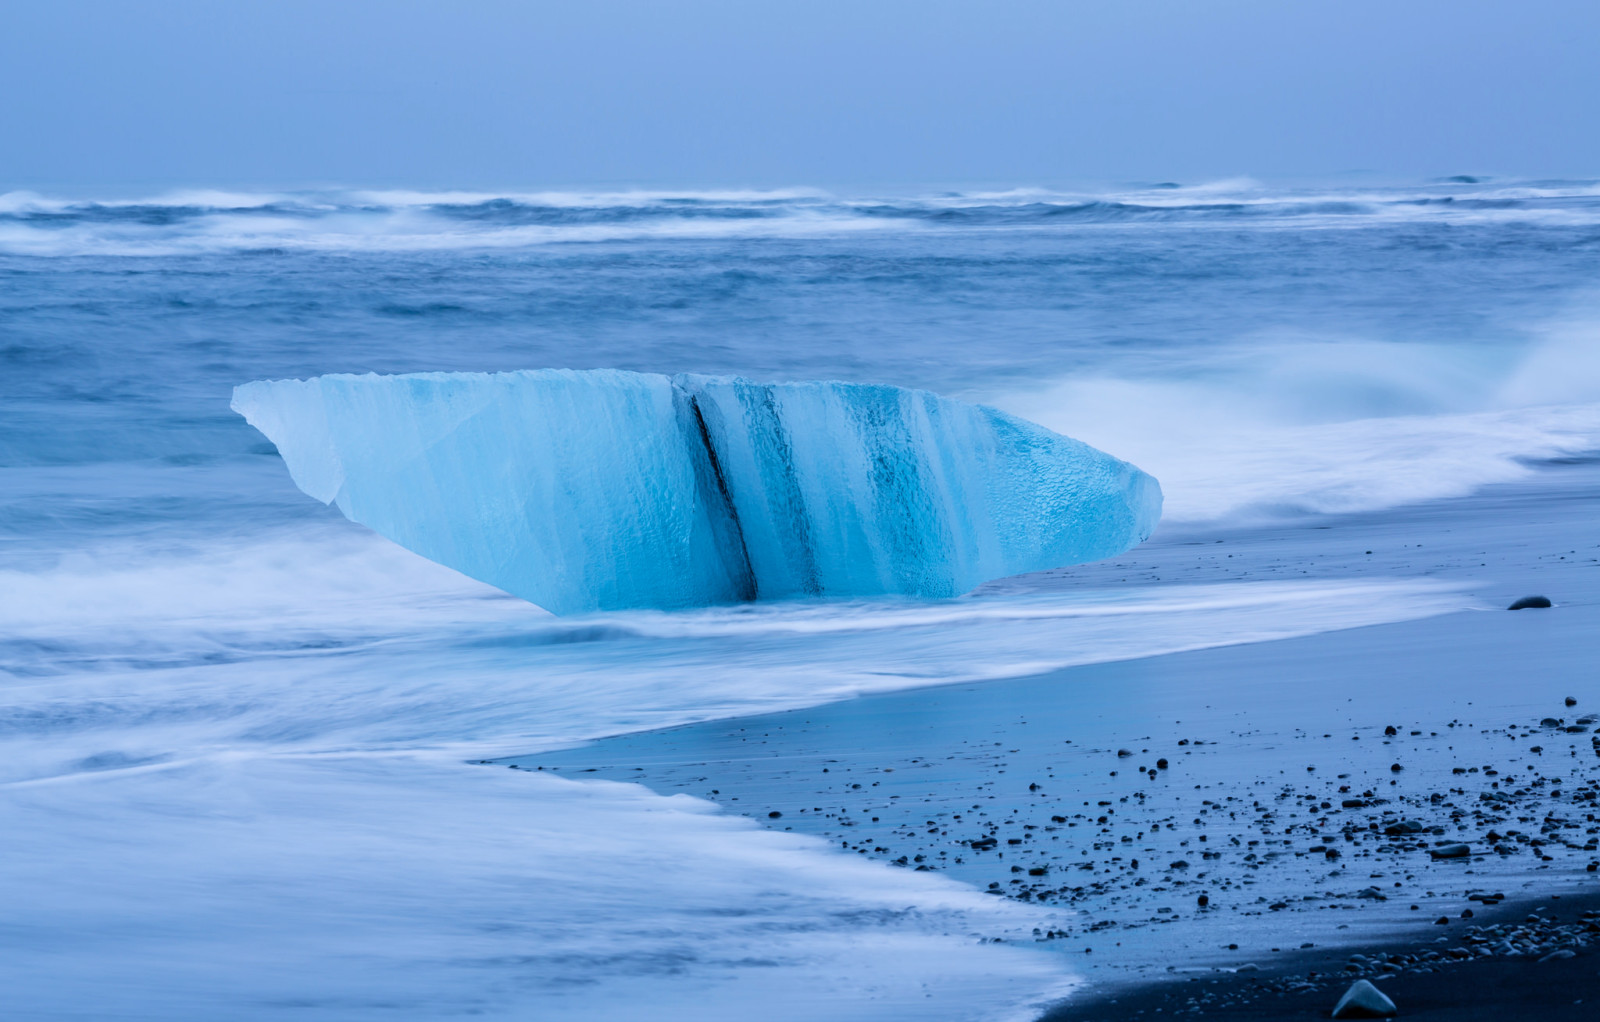 น้ำแข็ง, ฝั่งทะเล, ทะเล, คลื่น, พายุ, ประเทศไอซ์แลนด์, แพน้ำแข็ง, ก้อน